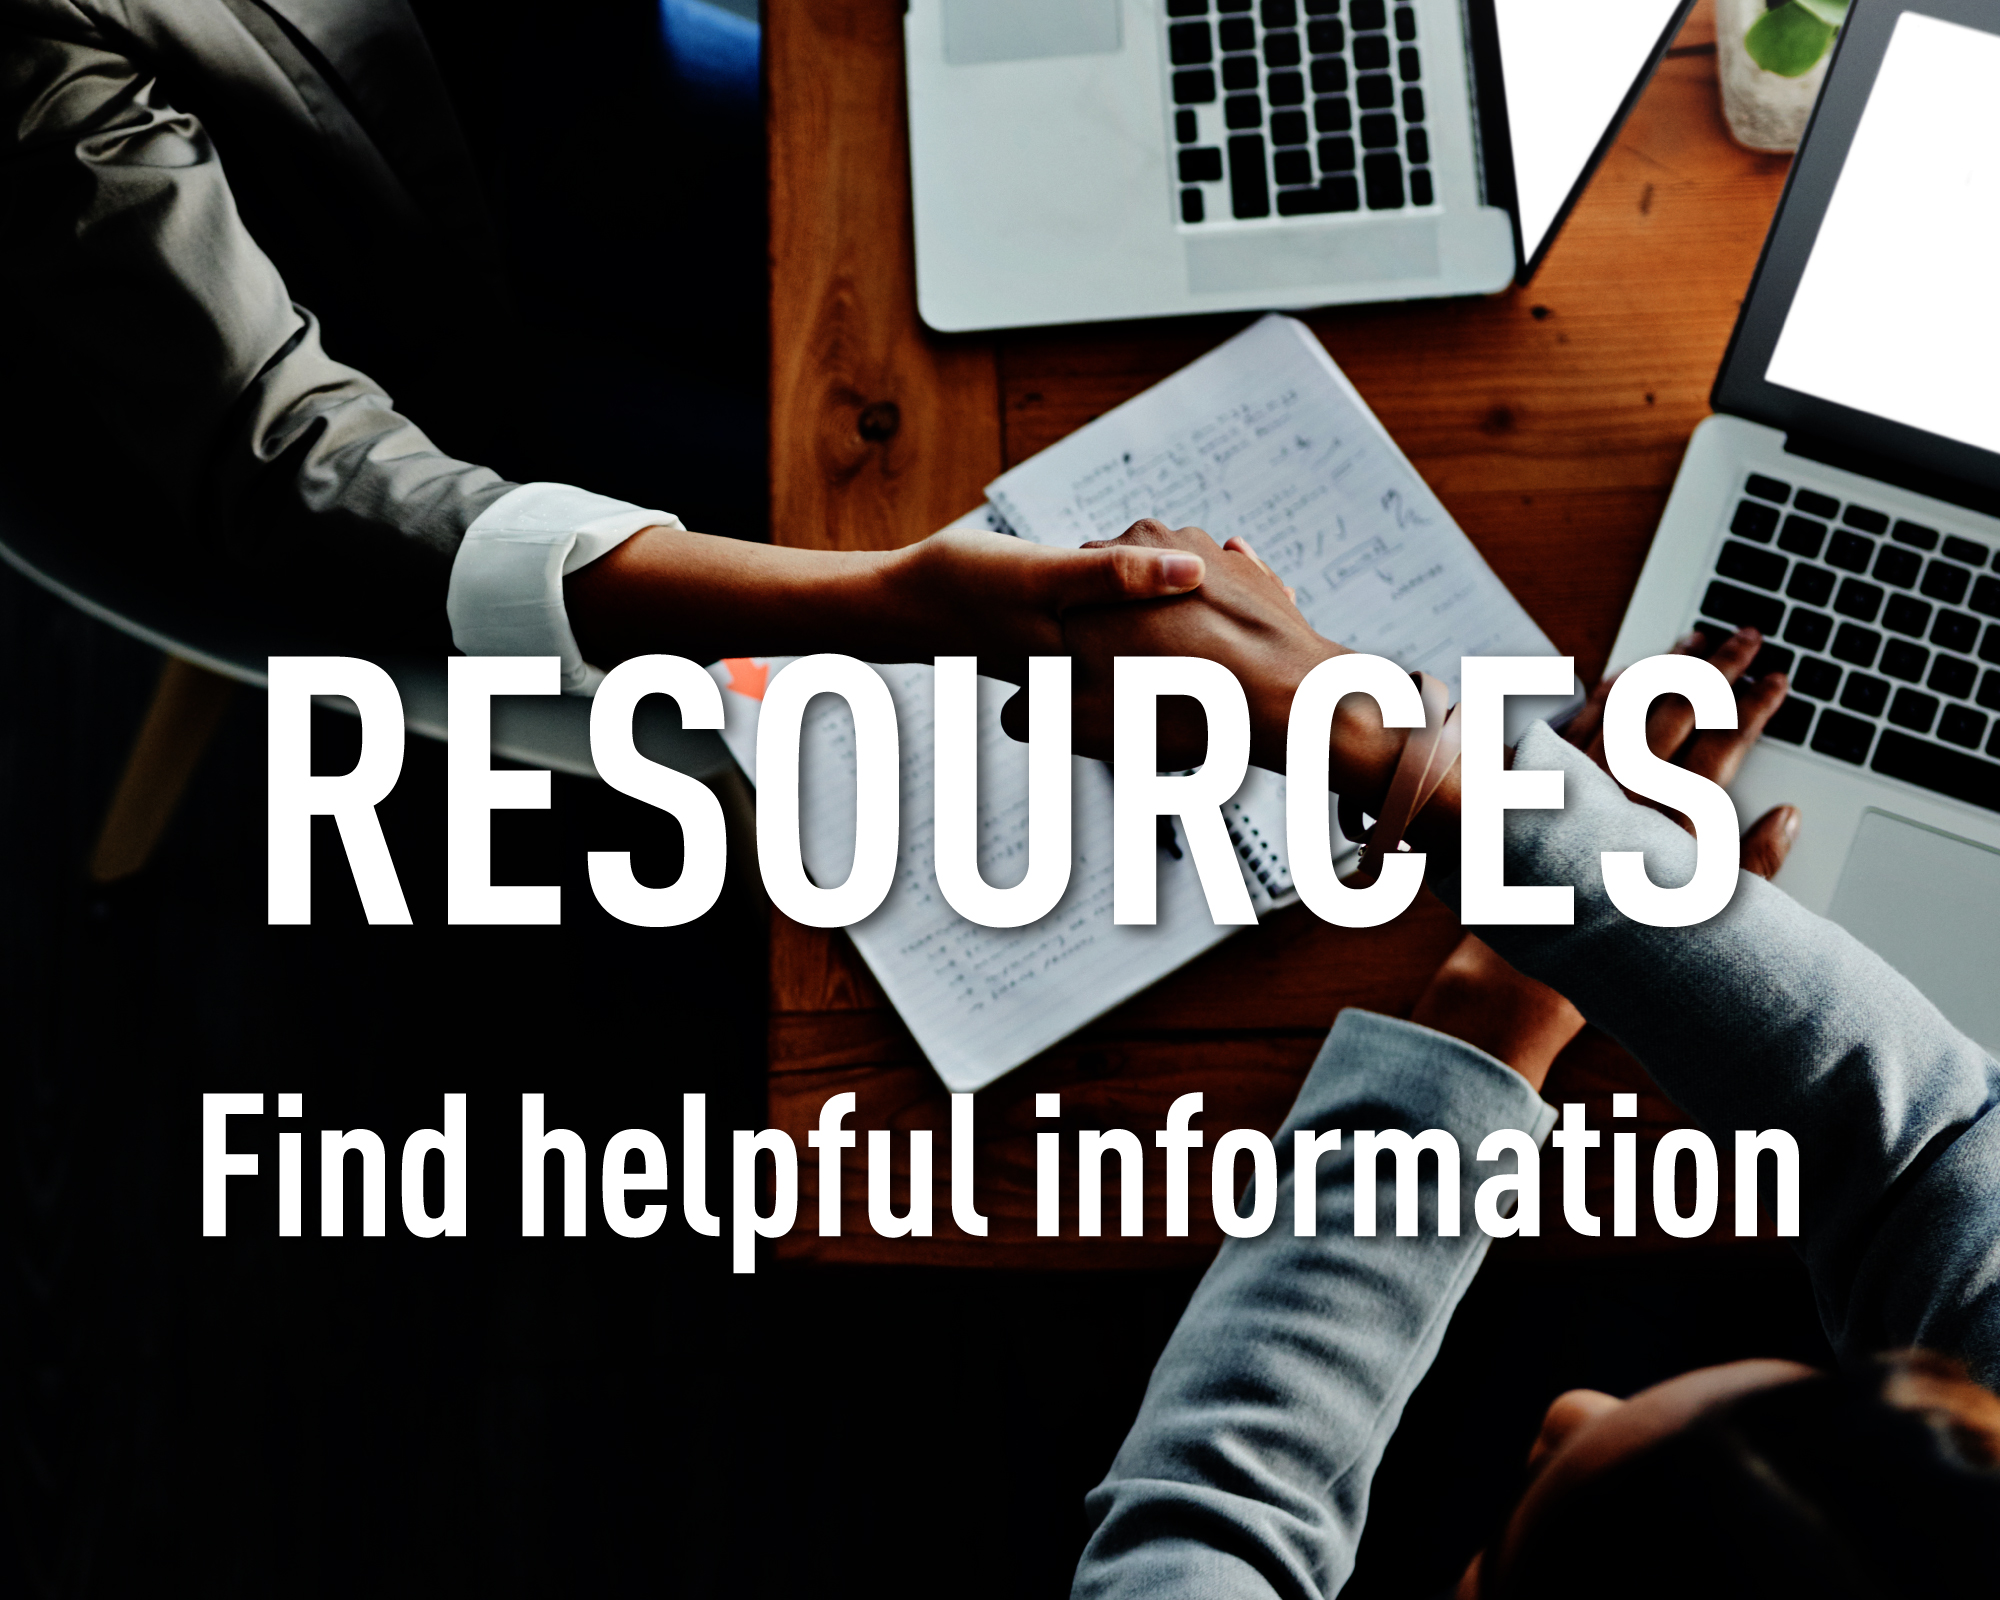 Resources. Find helpful information.